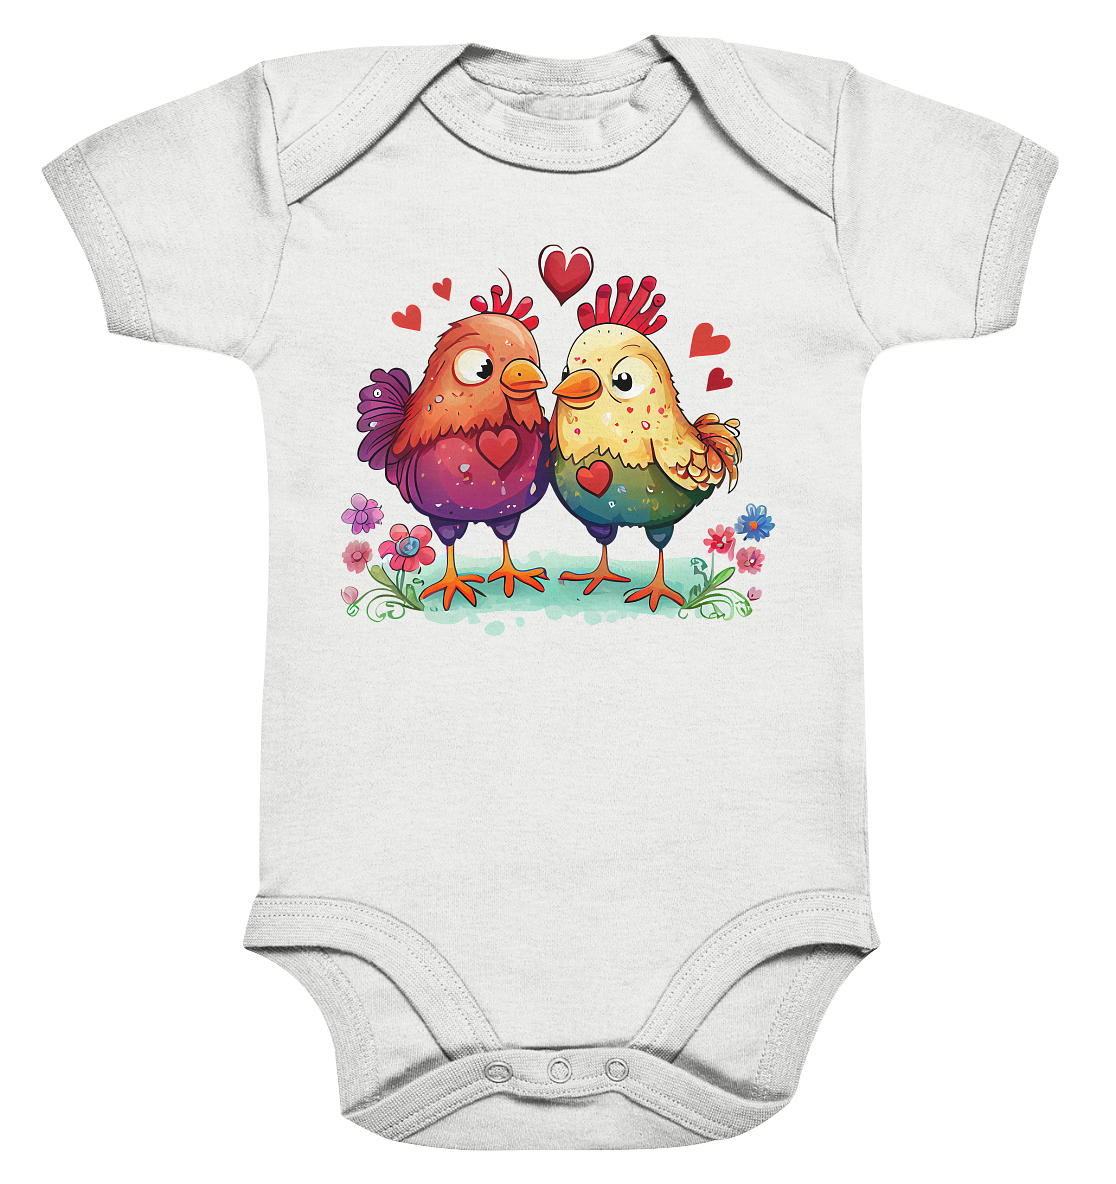 23-1123 Cute Chicken - Organic Baby Bodysuite